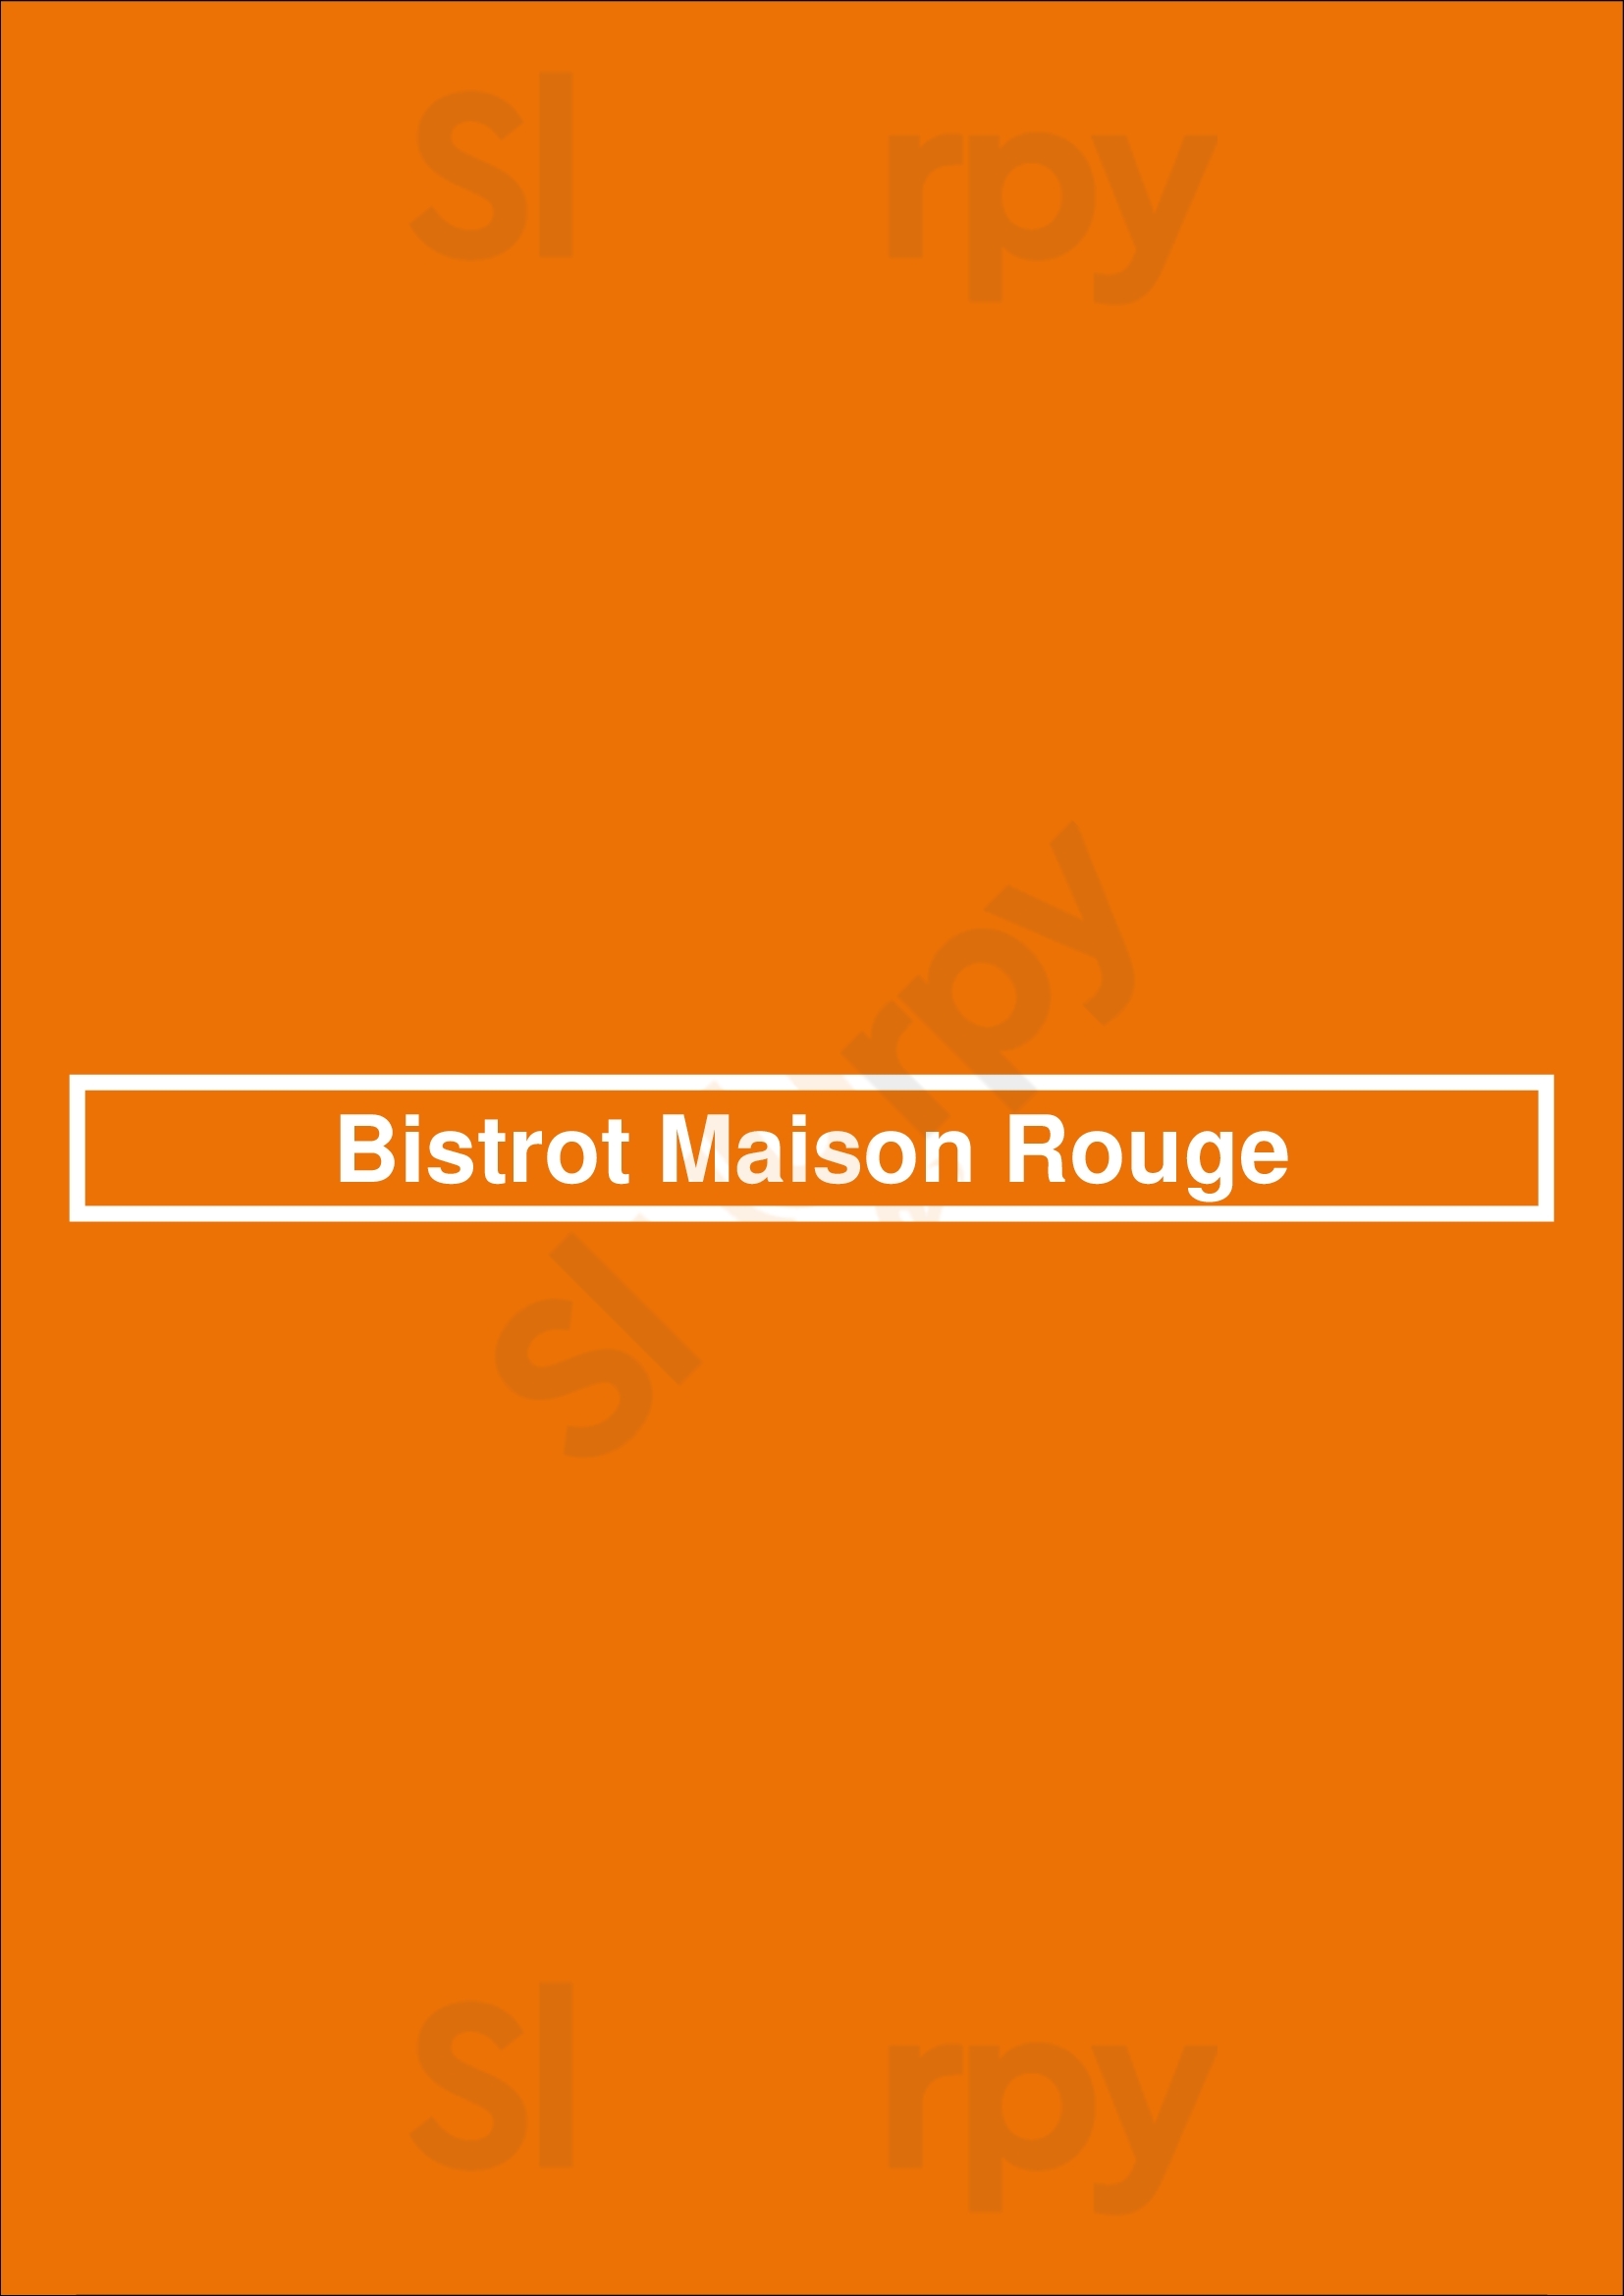 Bistrot Maison Rouge Paris Menu - 1